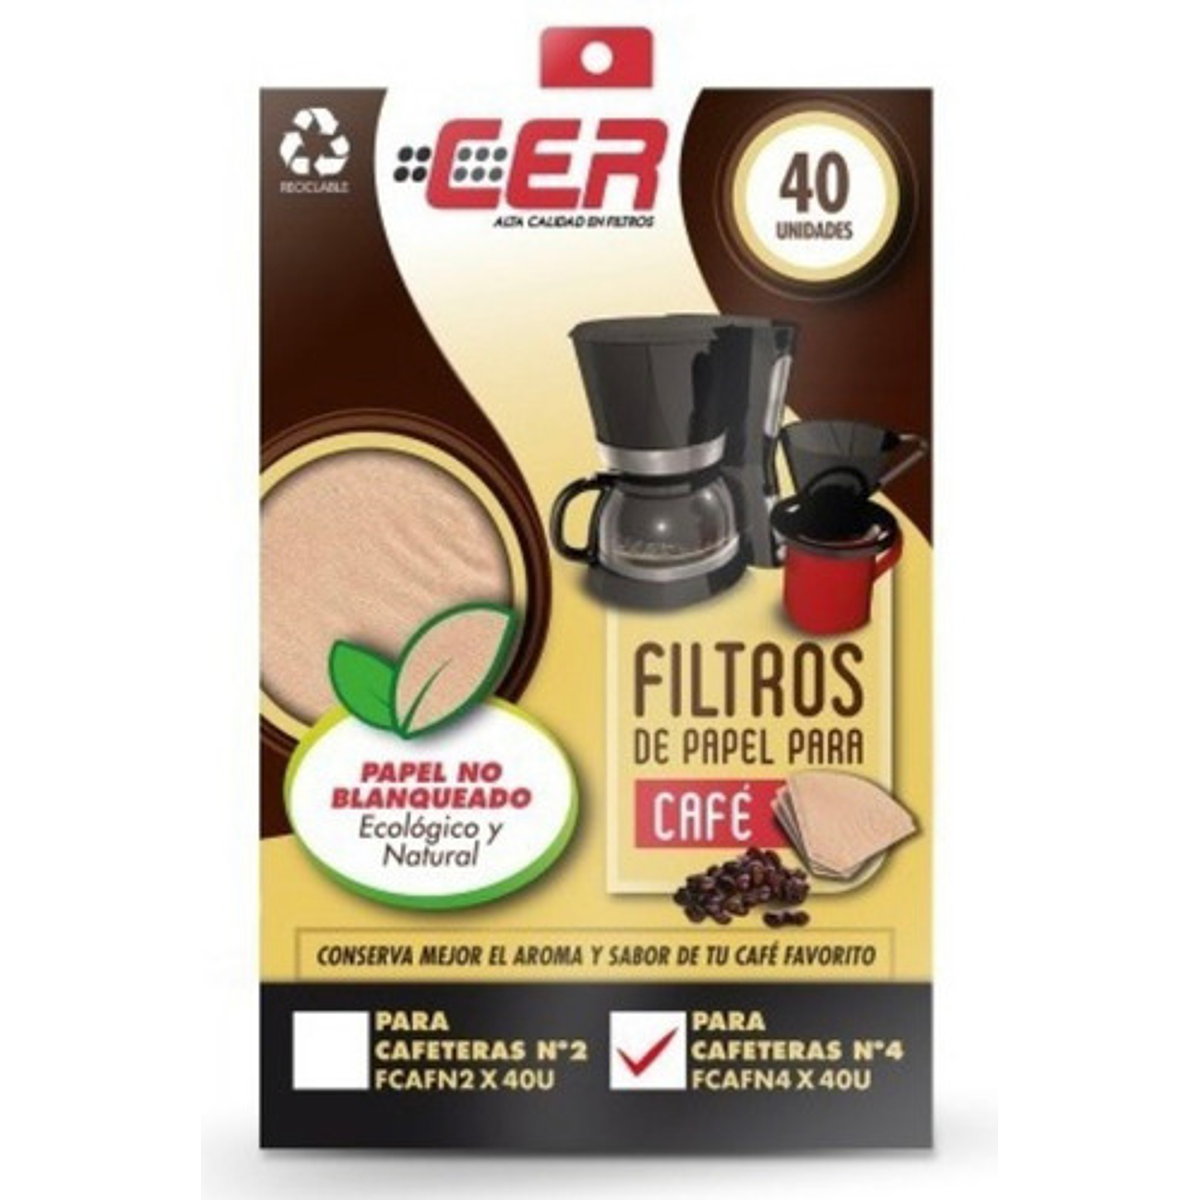 Cafetera Manual con Filtro  Oferta con filtros de papel y Envío